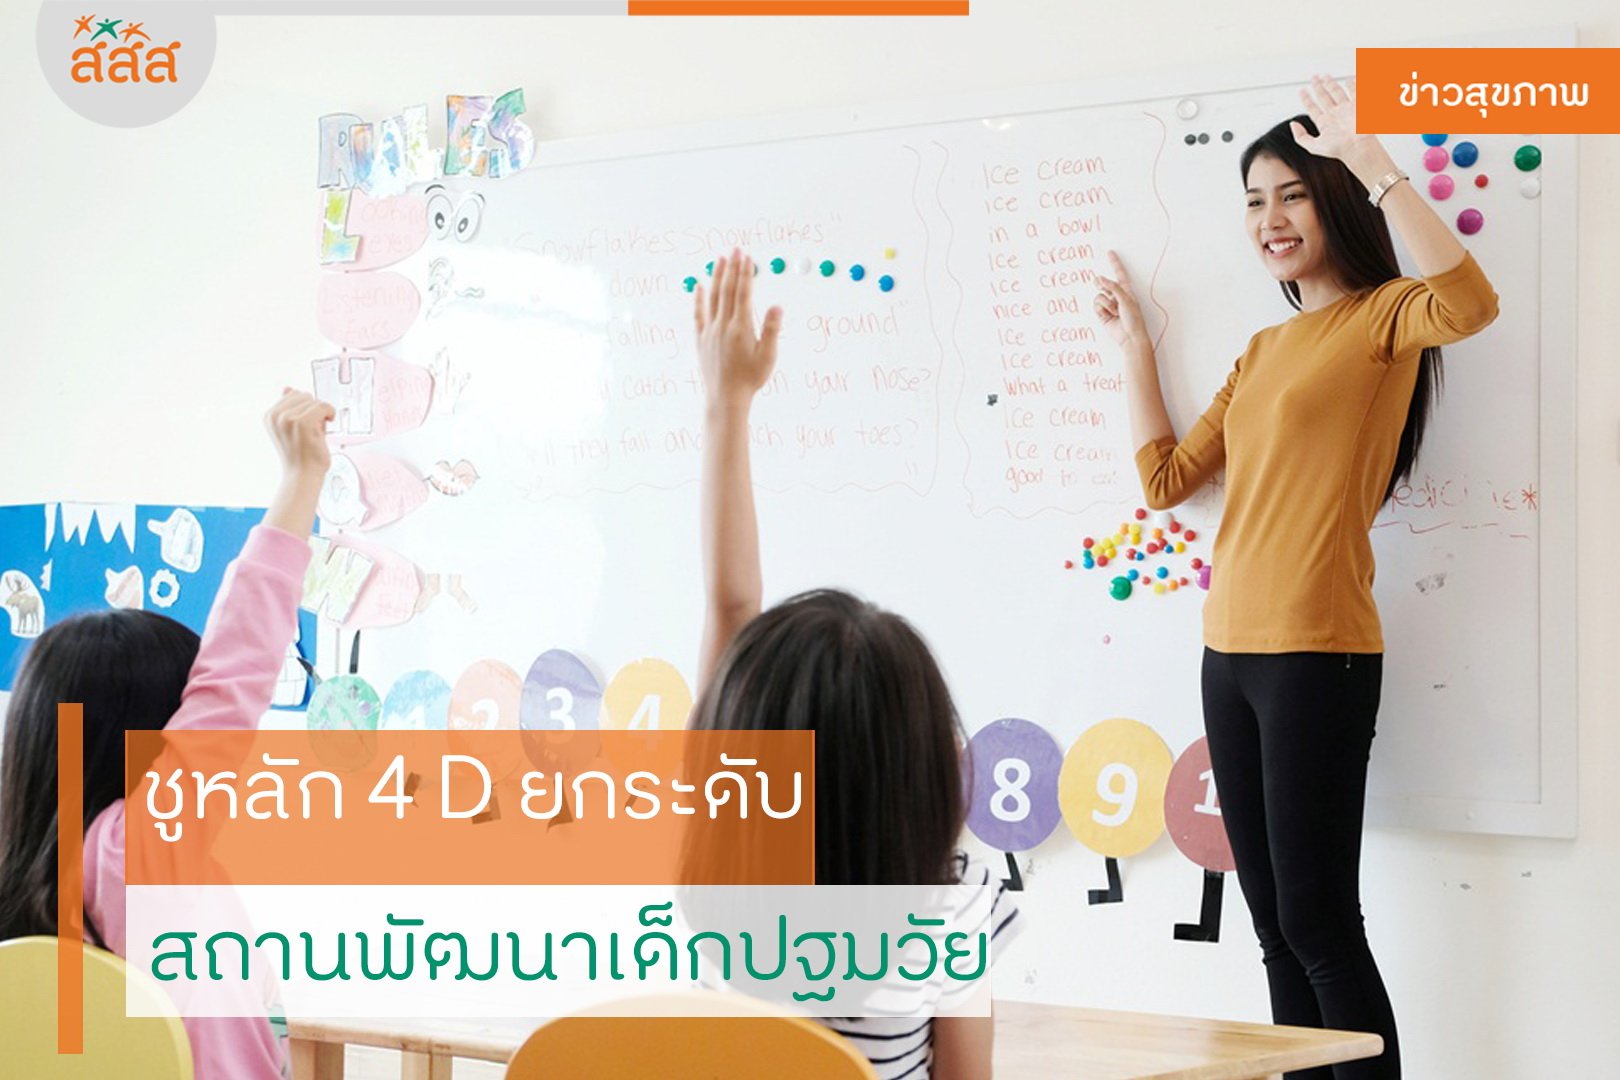 ชูหลัก 4 D ยกระดับ สถานพัฒนาเด็กปฐมวัย thaihealth